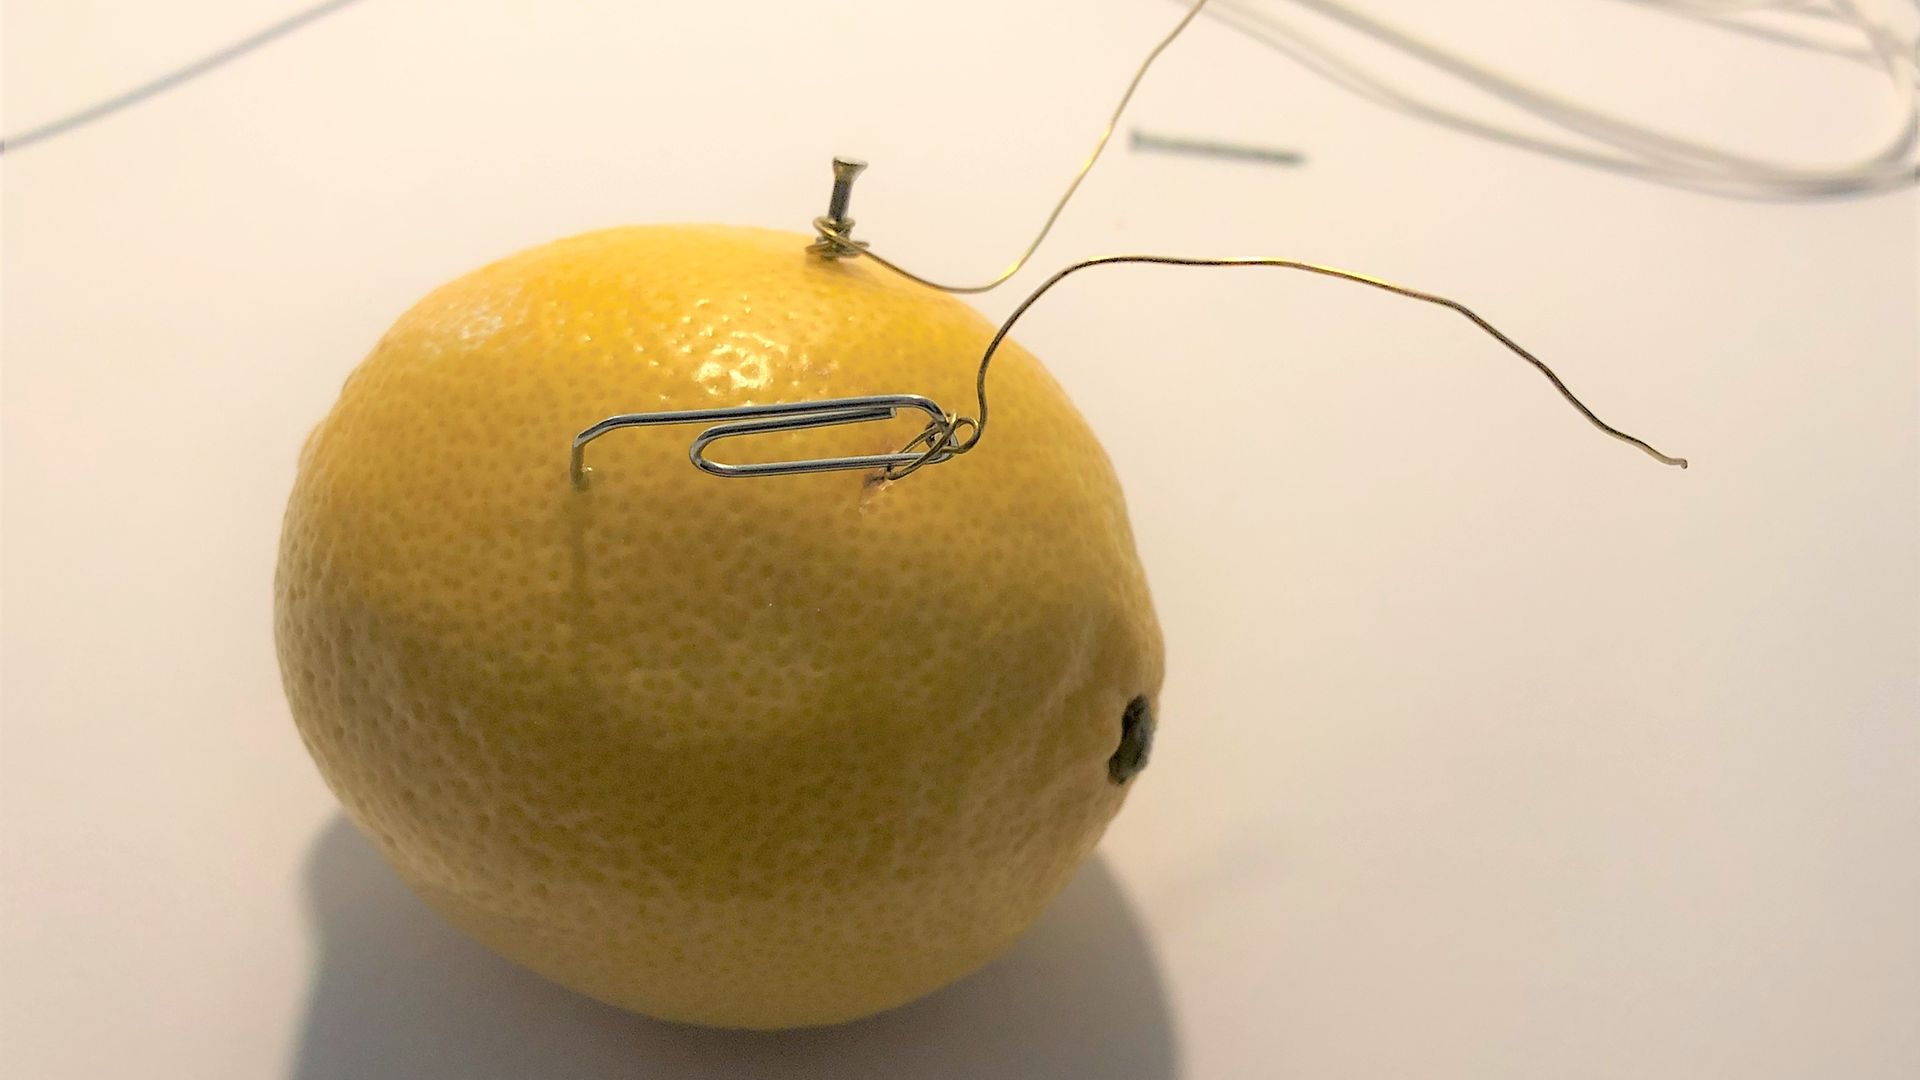 Zitrone mit Nagel, Büroklammer und Drähten